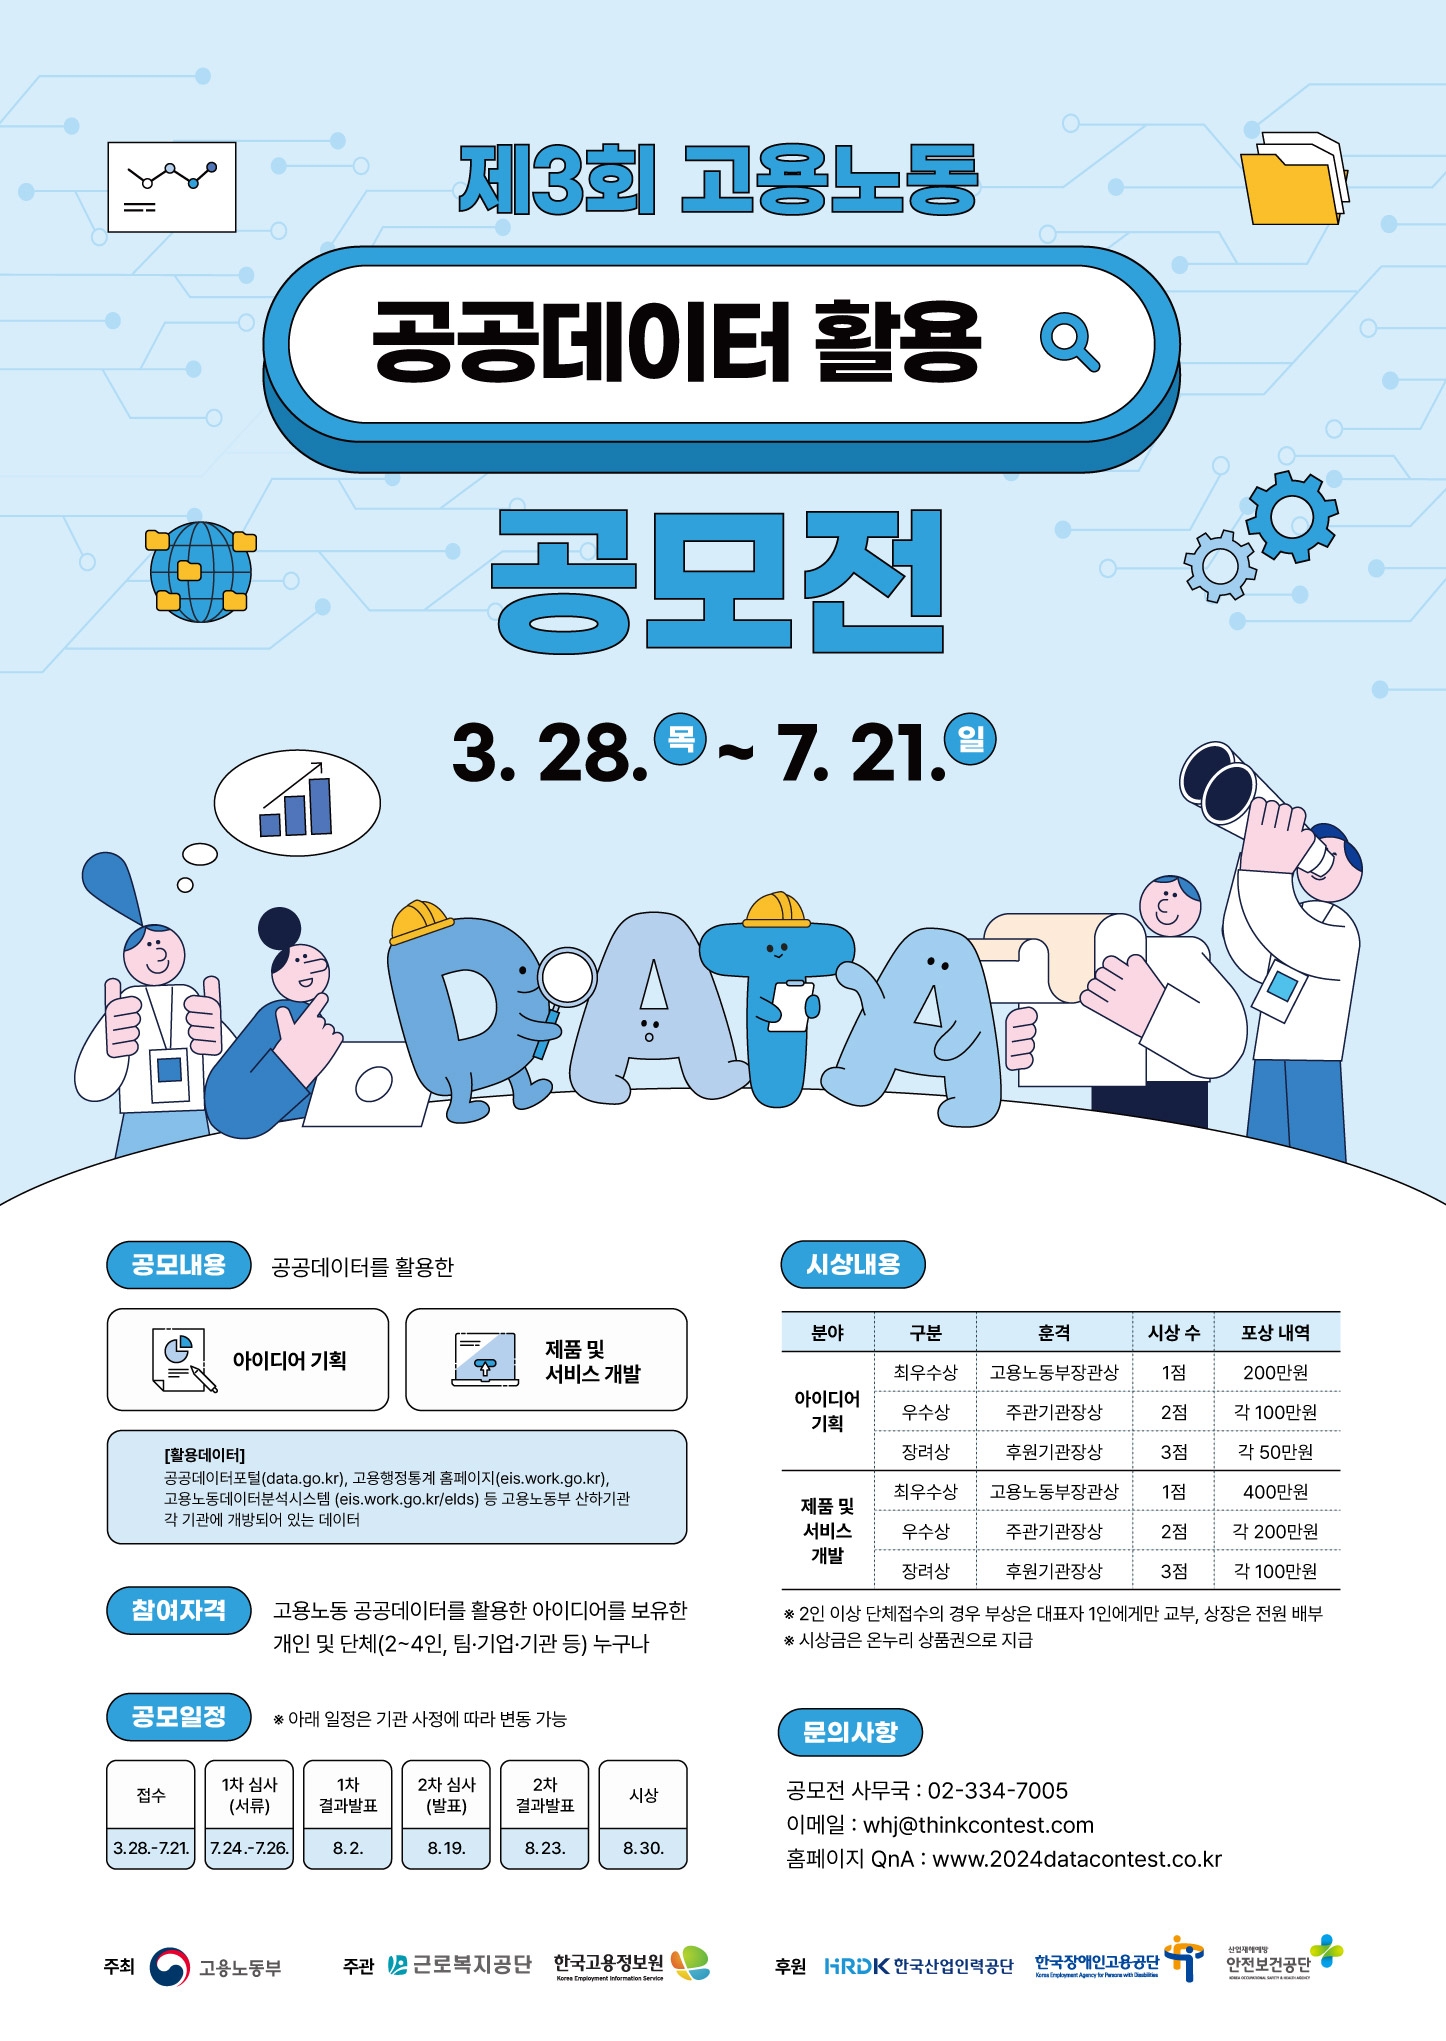 한국고용정보원, 공공고용노동데이터 활용 공모전 개최